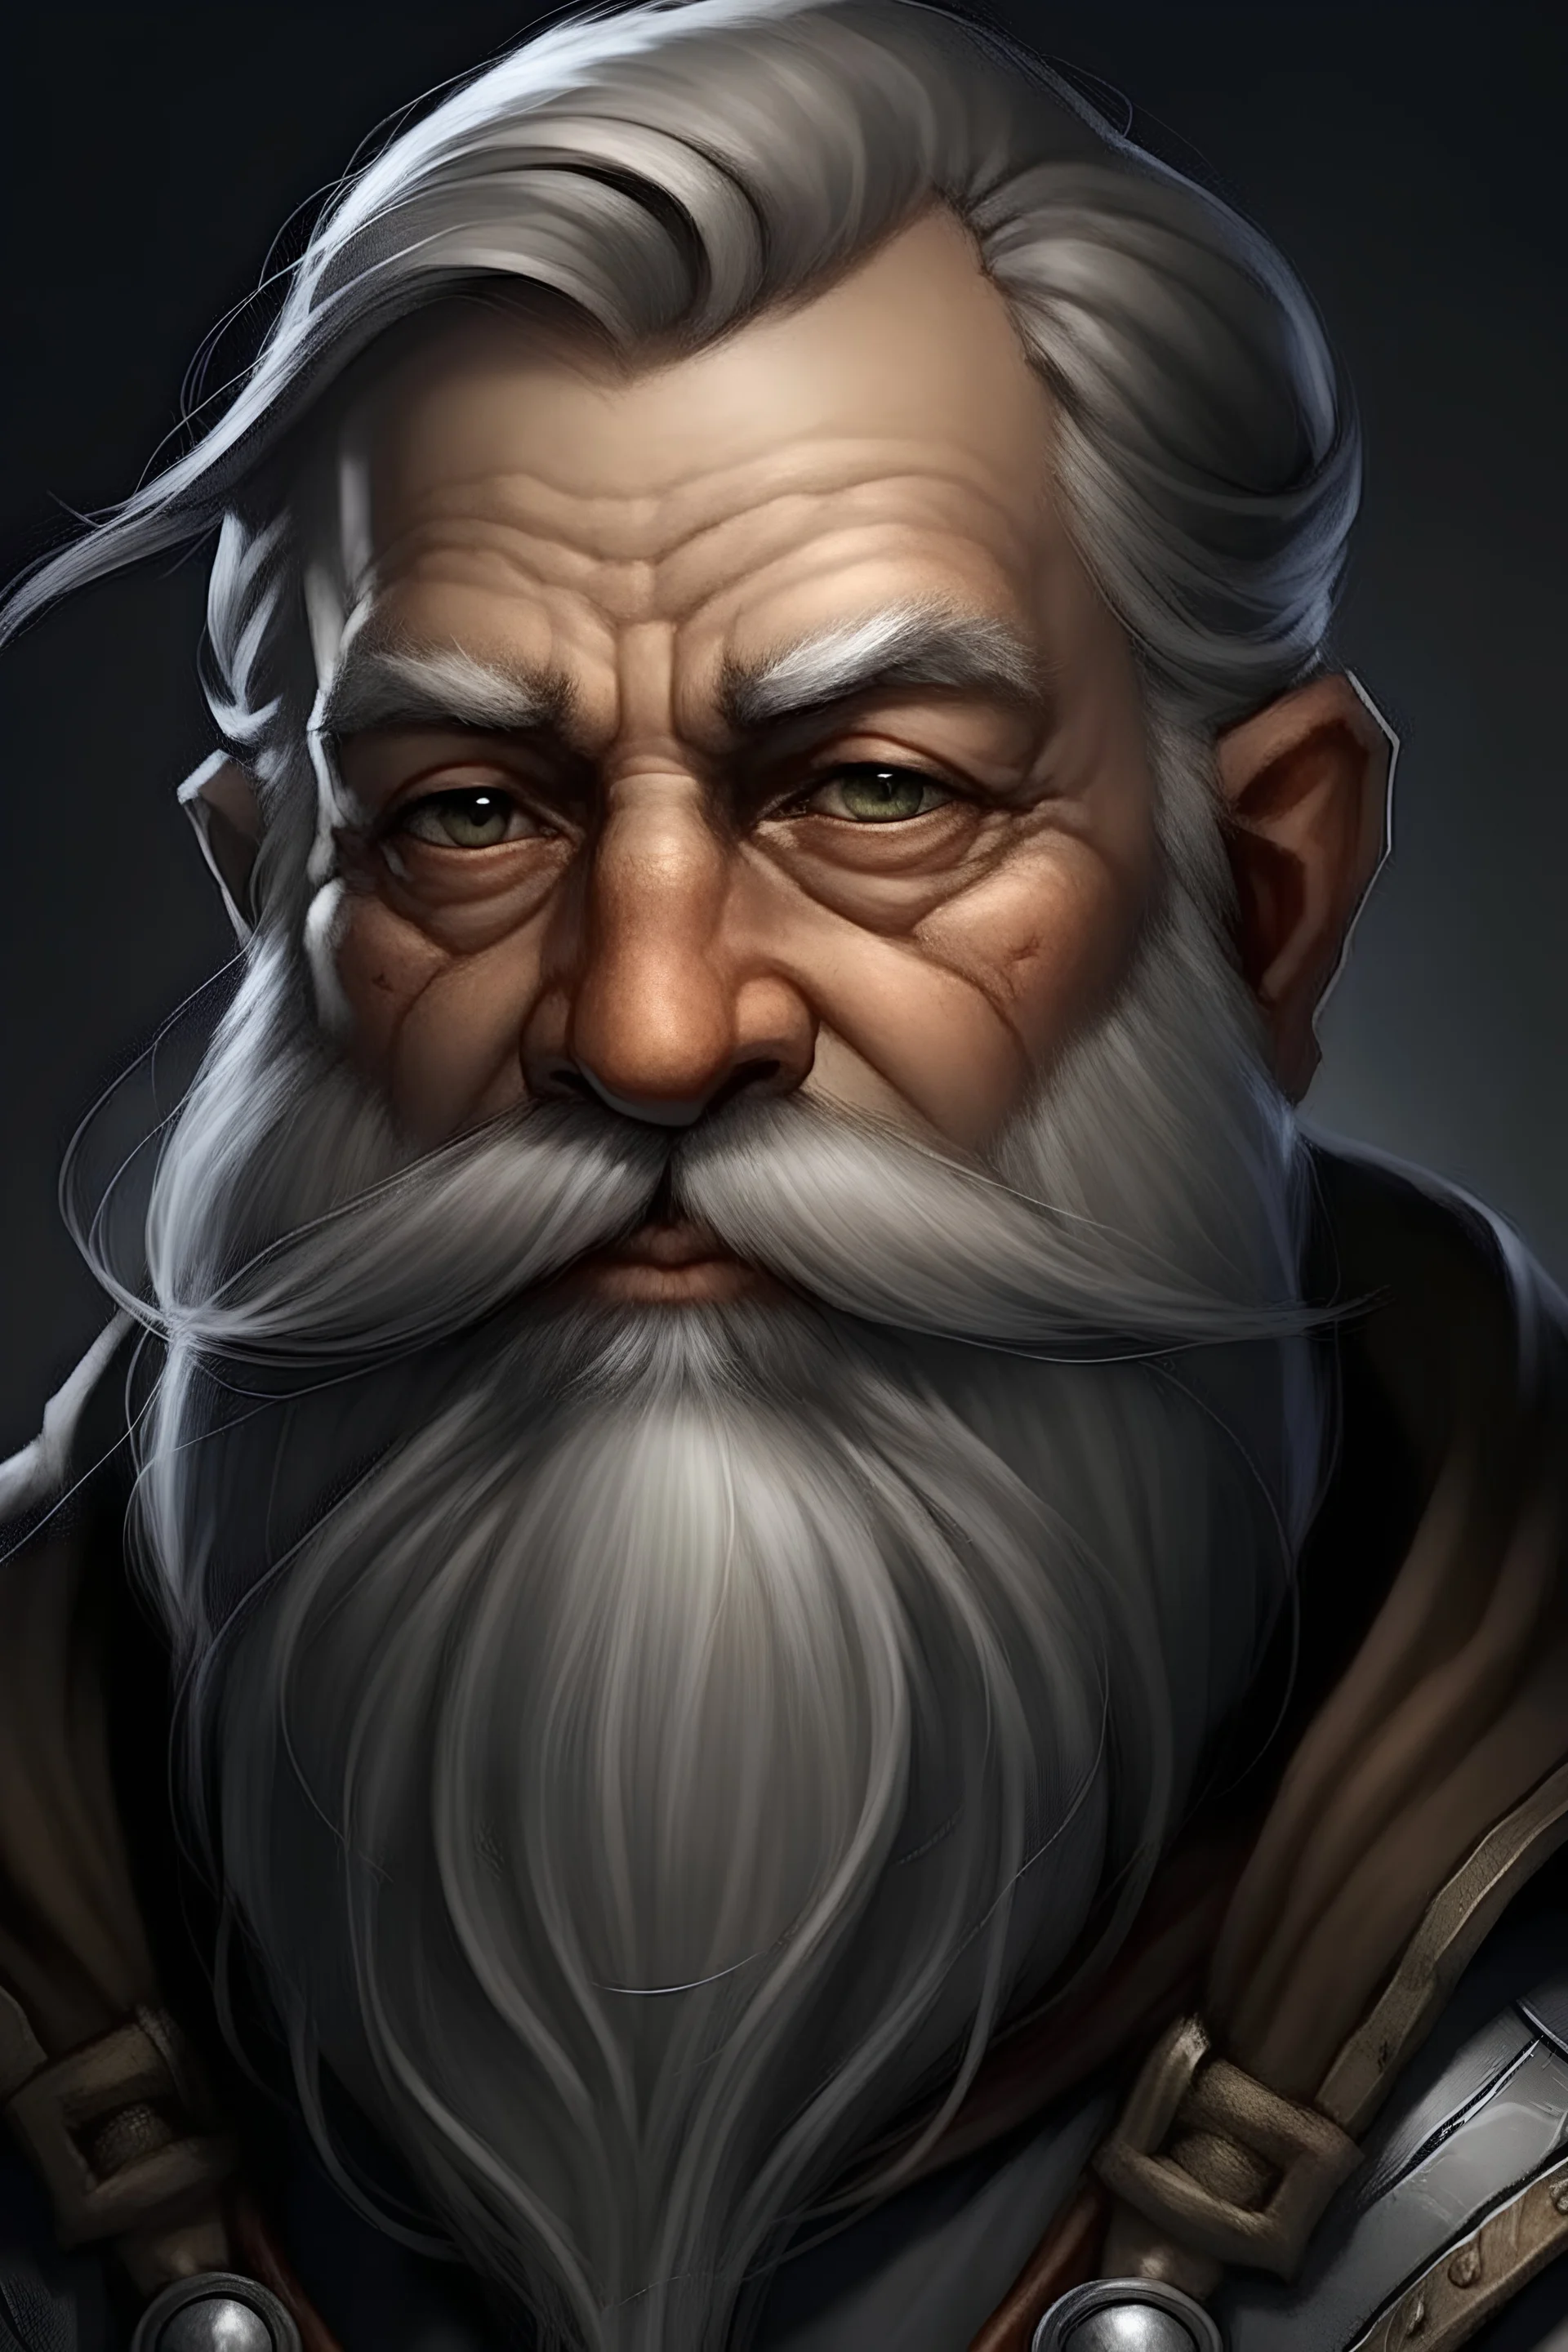 short dwarf with a gray beard